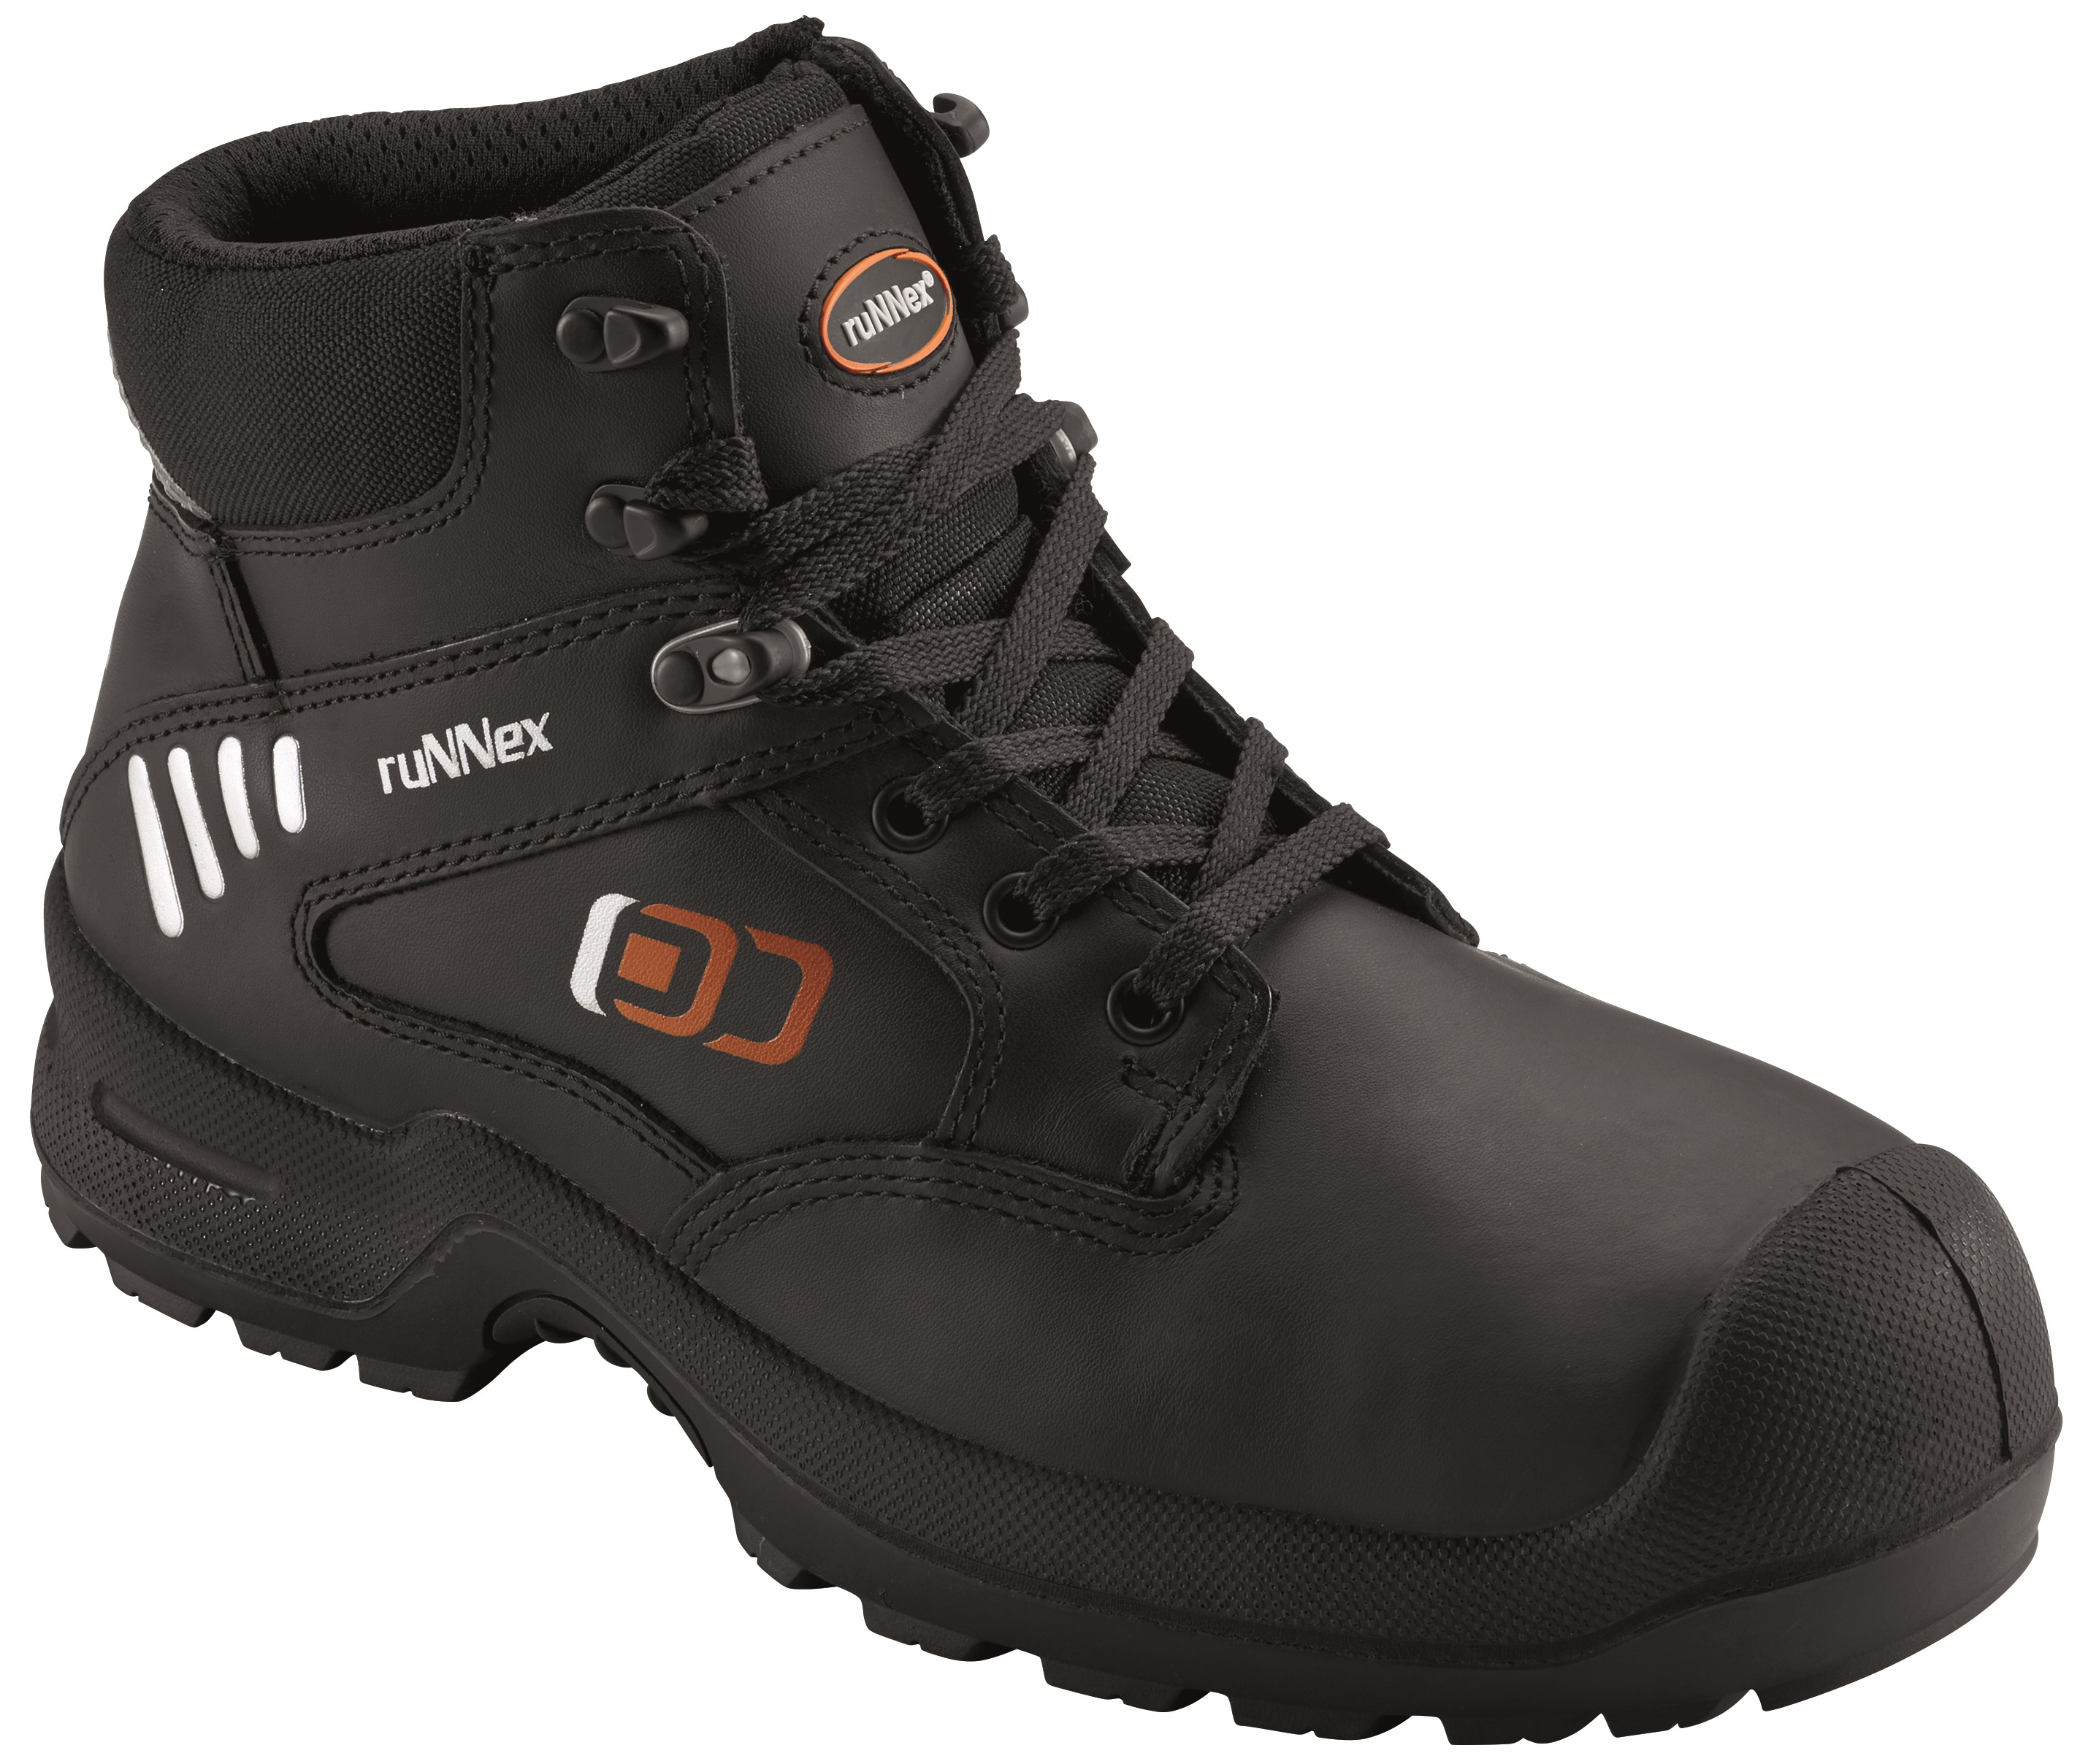 BIG-RUNNEX-Footwear, S3-Sicherheits-Arbeits-Berufs-Schuhe, Schnürstiefel, StrongStars, schwarz